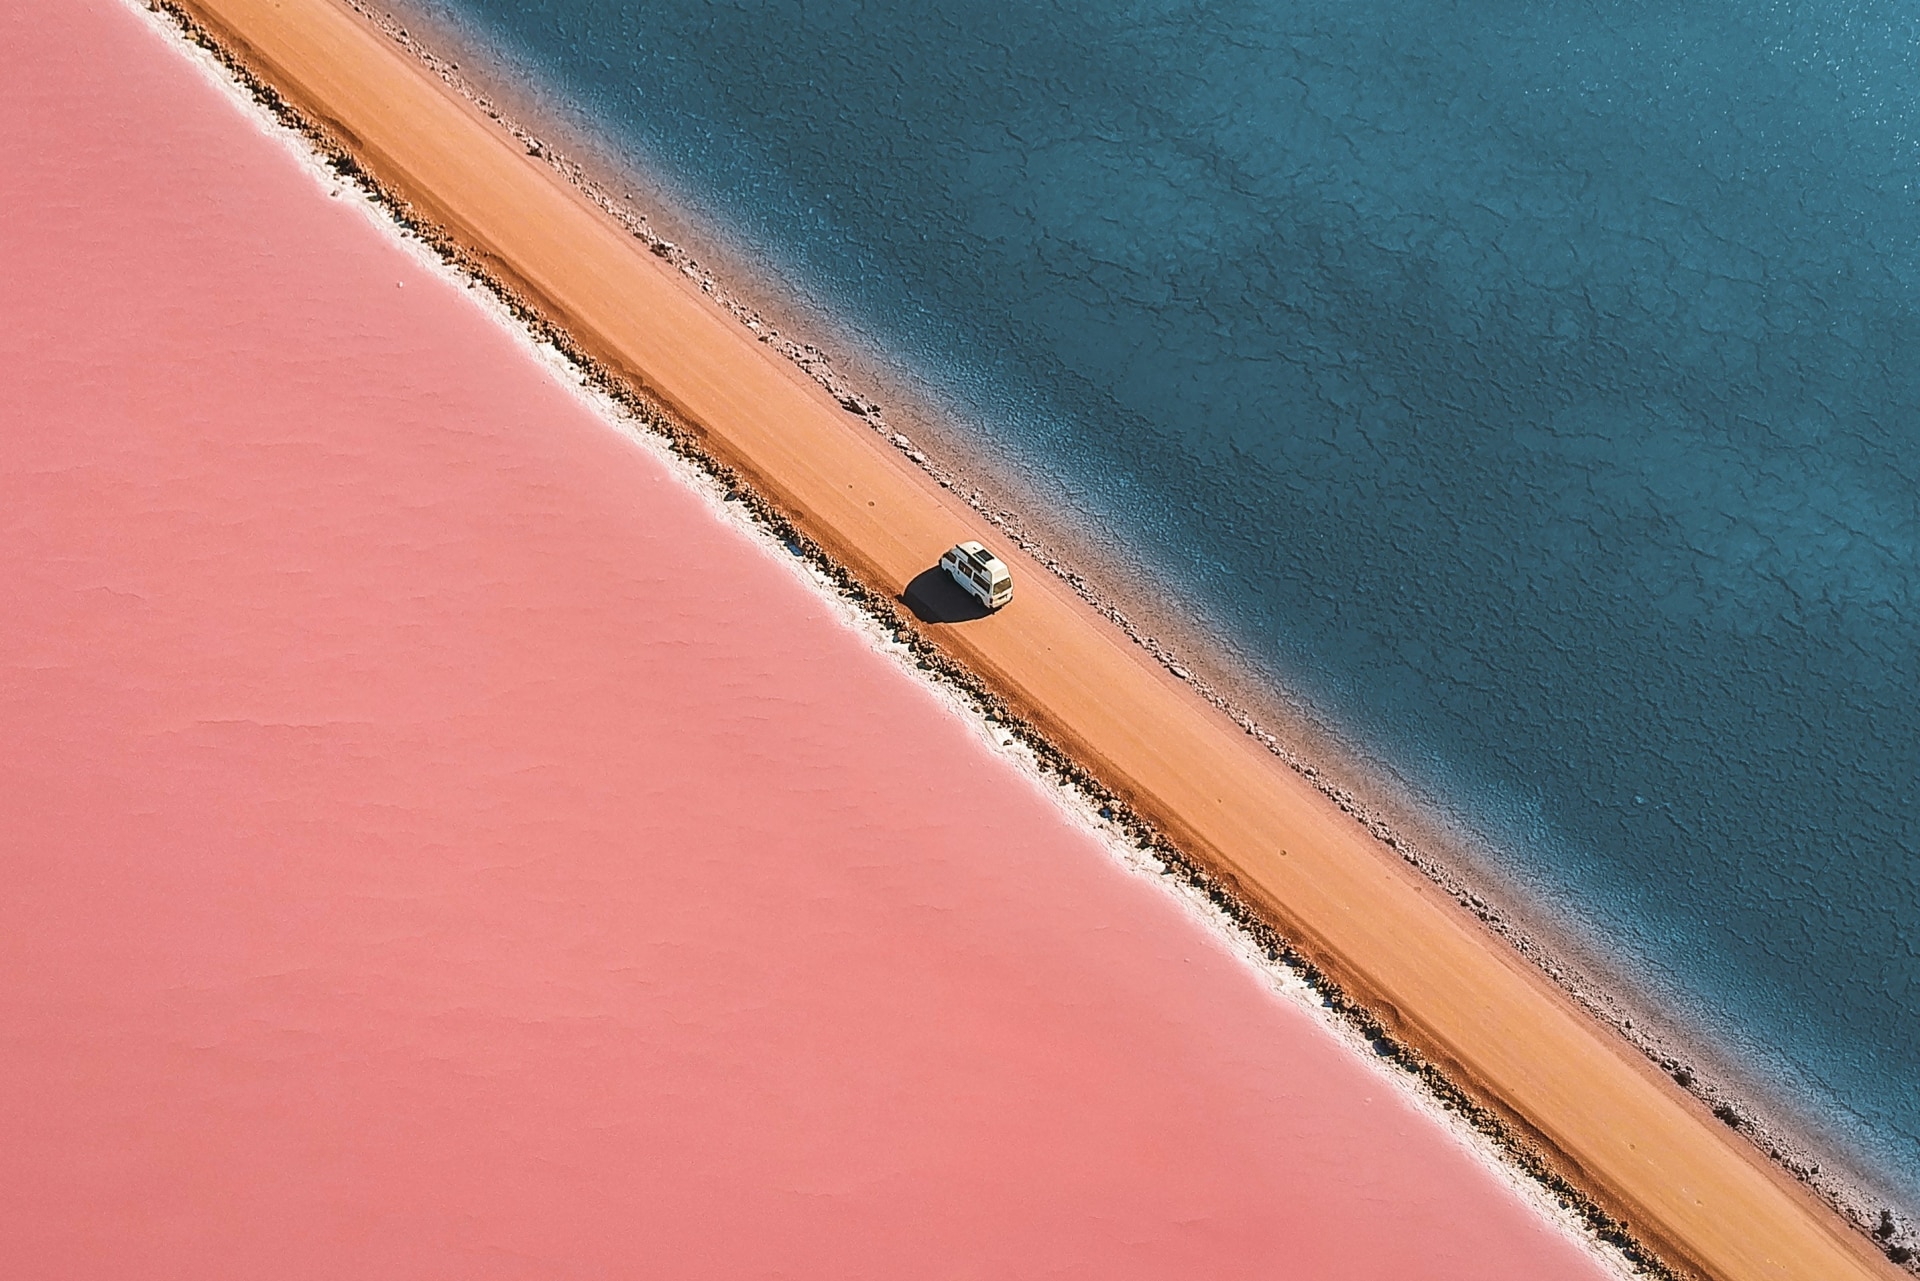 Lake MacDonnell, Eyre Peninsula, South Australia © Lyndon O'Keefe